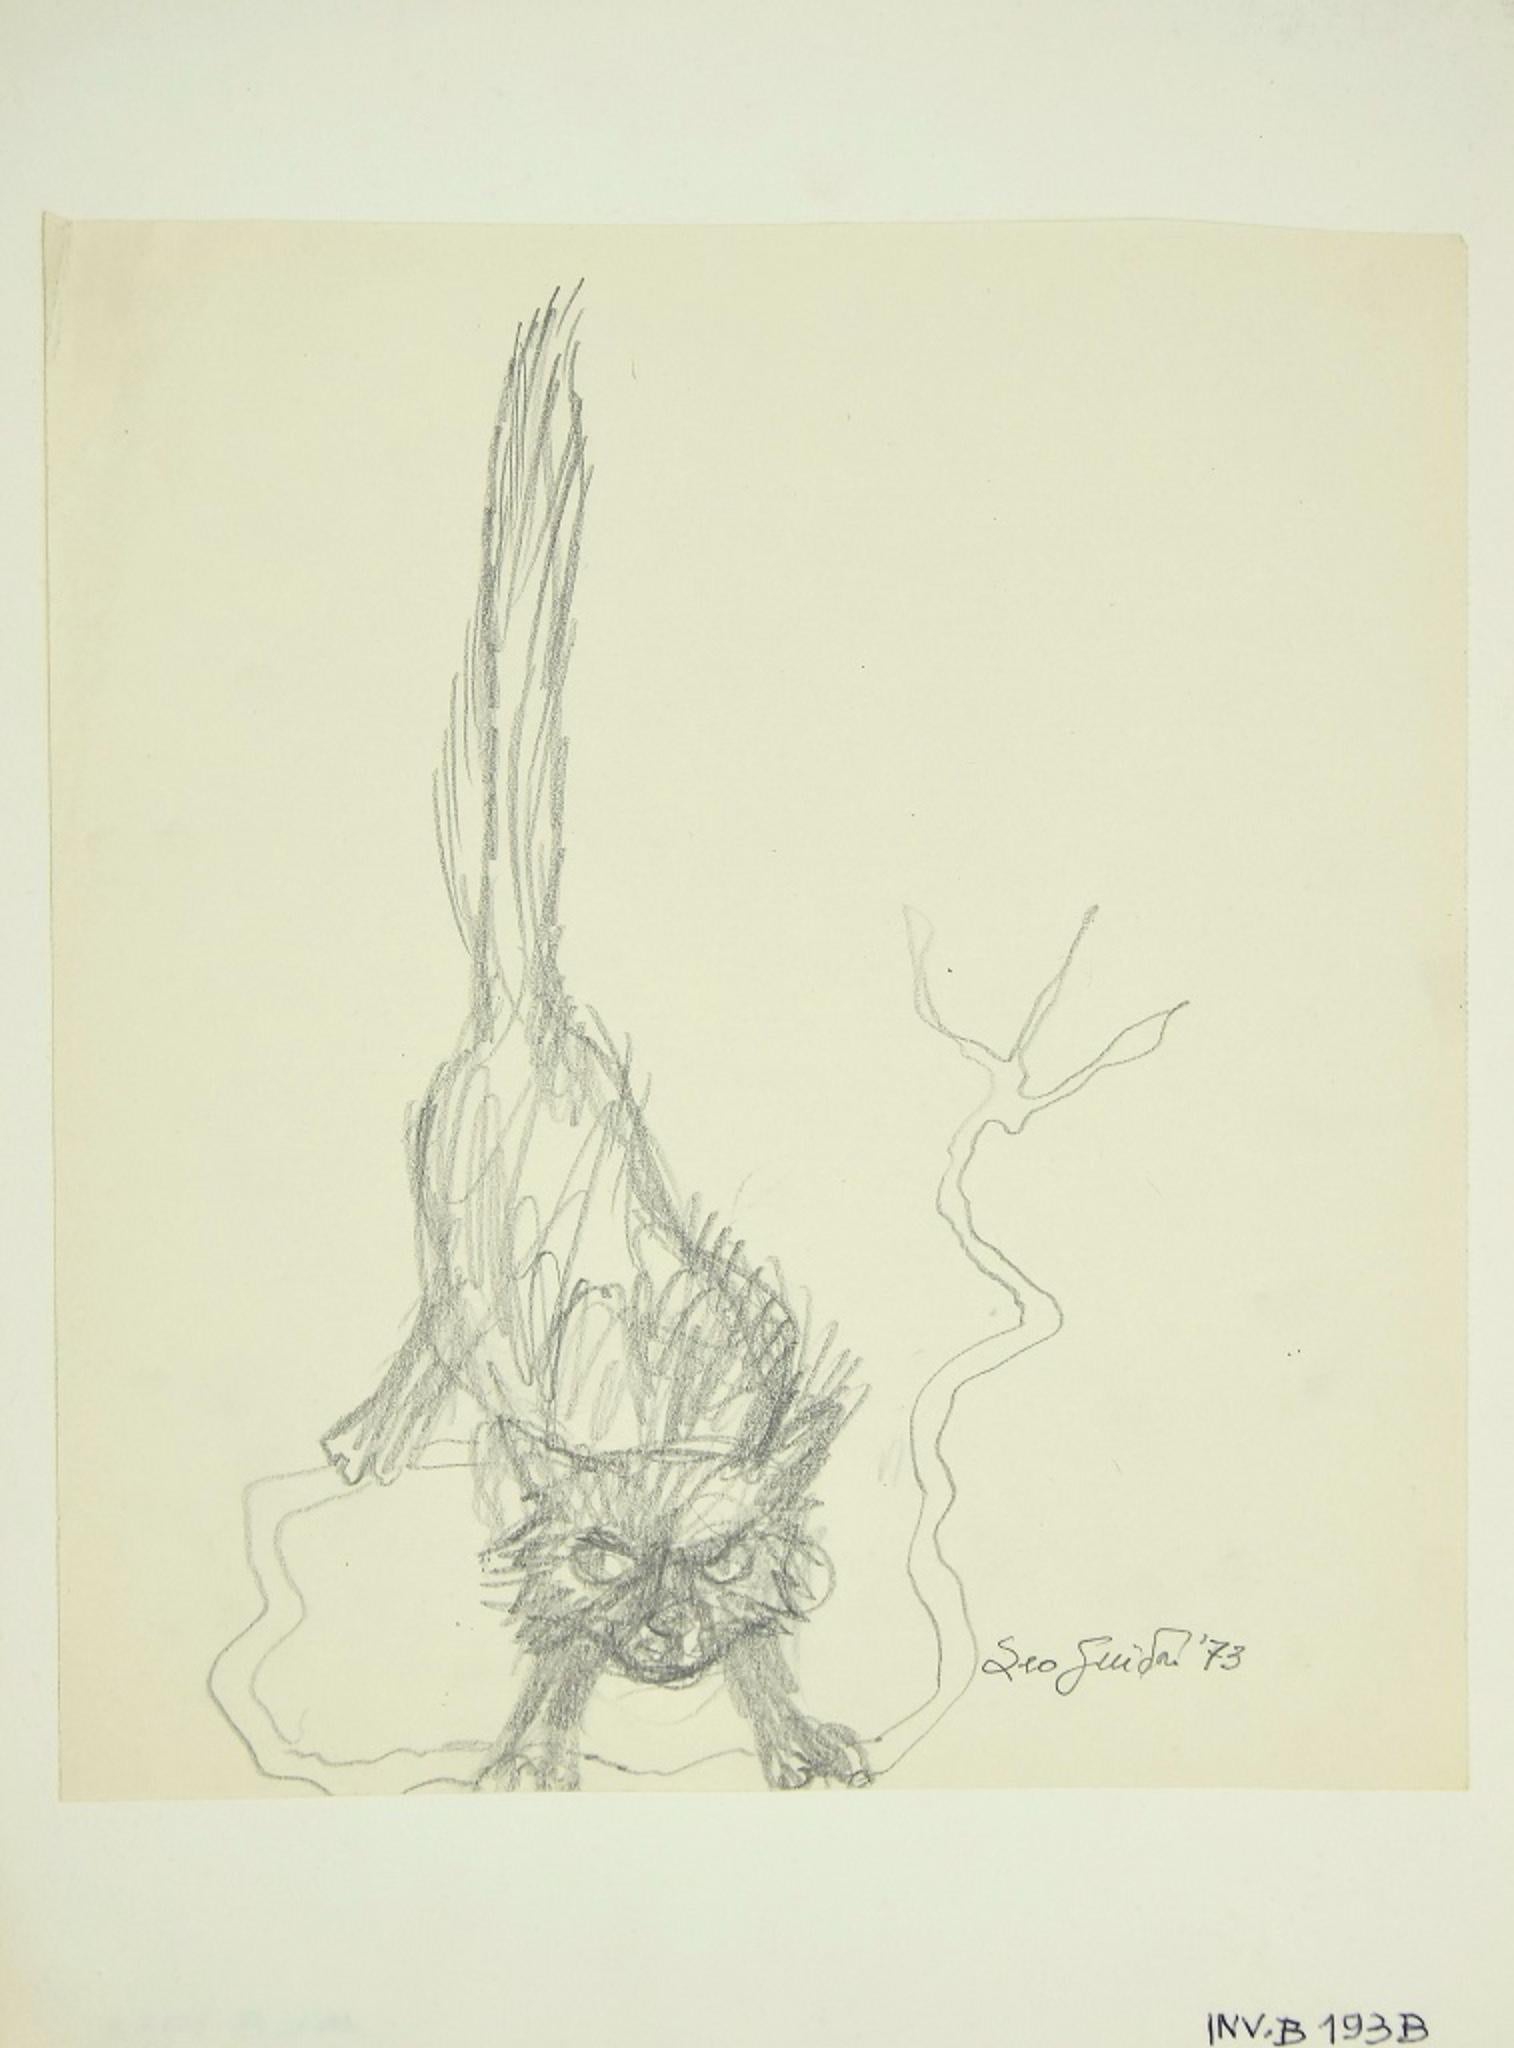 Cat est une œuvre d'art originale contemporaine réalisée en 1973 par l'artiste italien Leo Guida.

Dessin original au crayon.

Daté et signé à la main au crayon dans la marge inférieure droite : Leo Guida '73.

Très bon état. 

Leo Guida. Sensible